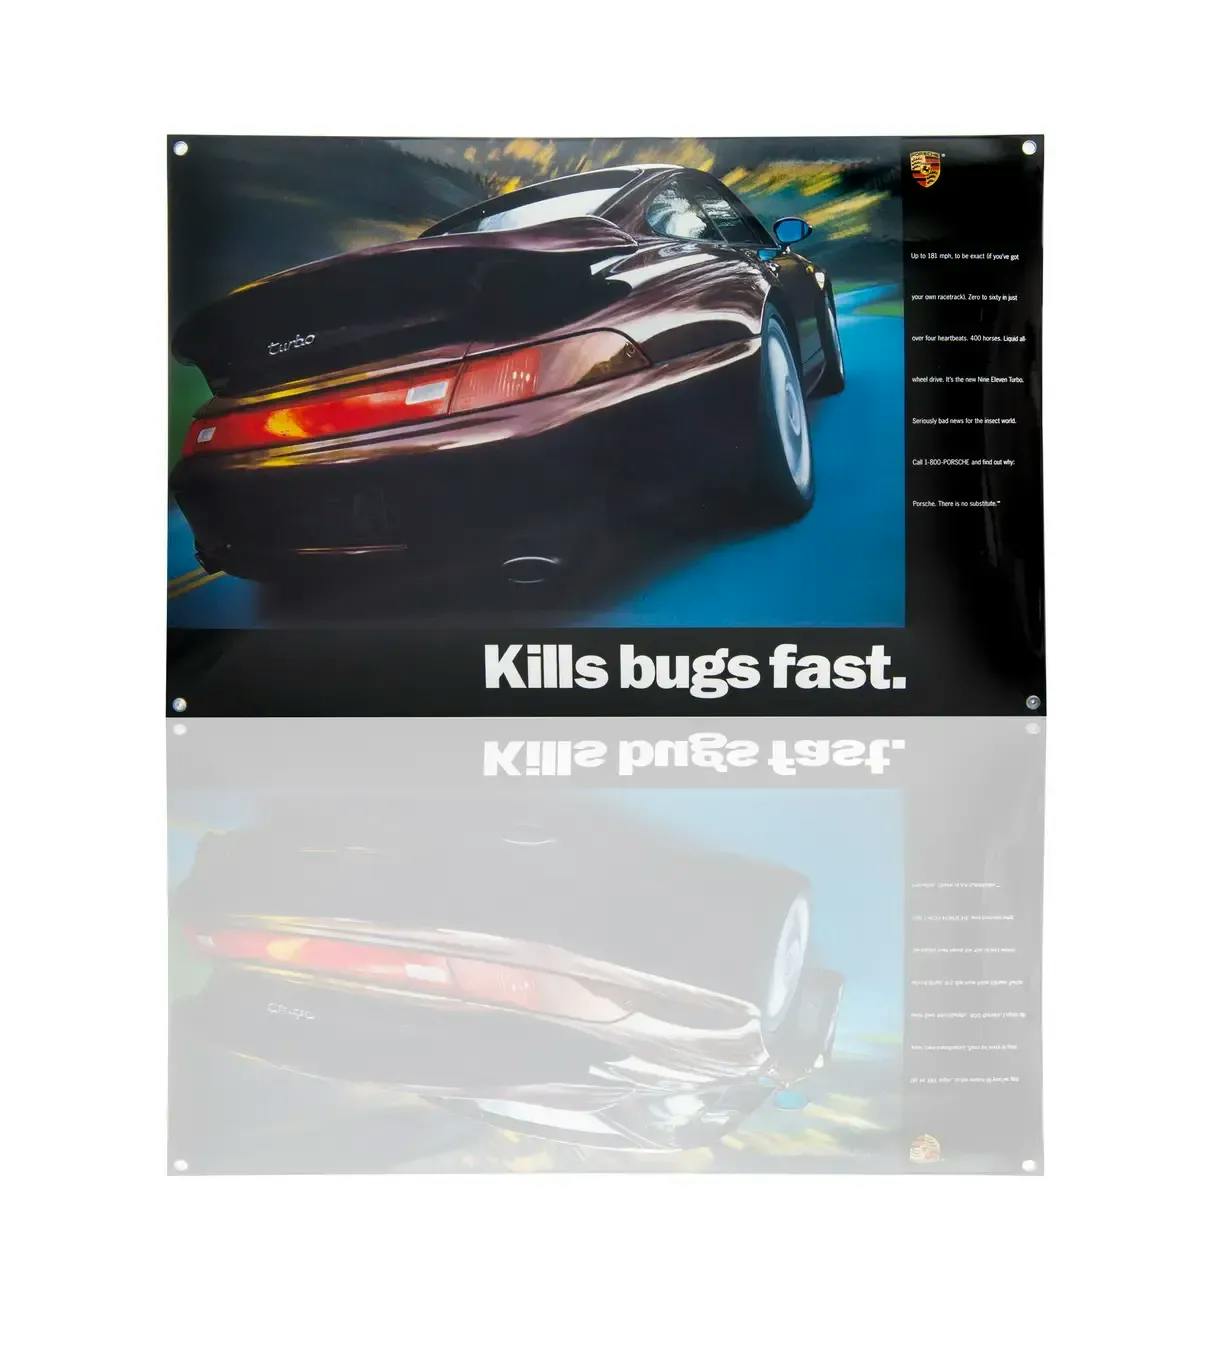 Placa esmaltada Porsche Classic 993 Turbo «Kills bugs fast» (No hace sufrir a los mosquitos, los mata rápido). 1